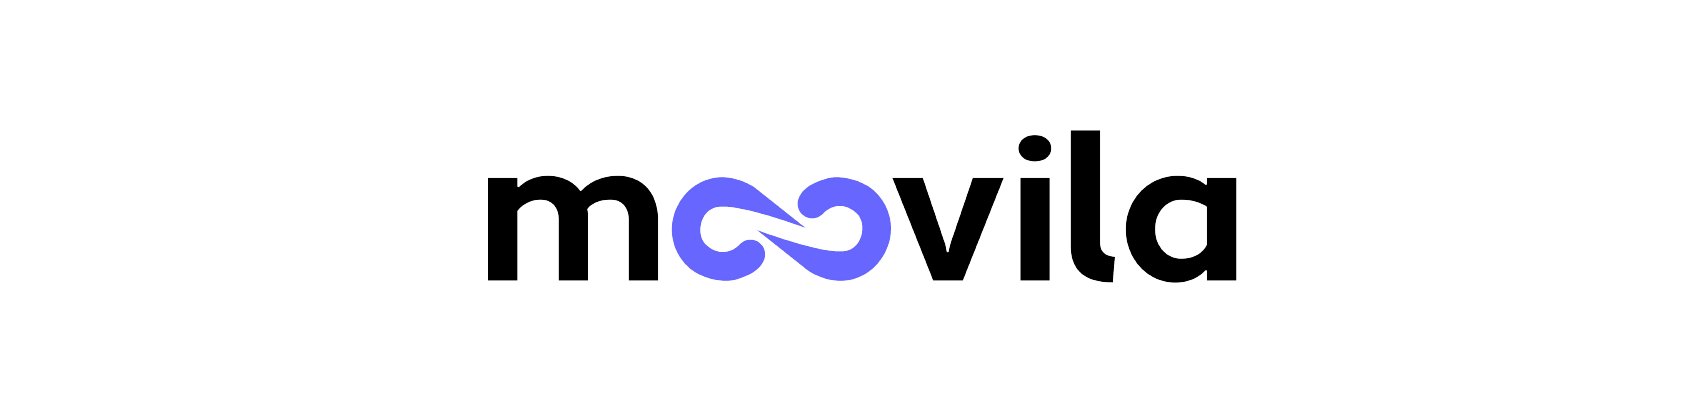 Battlecard - Moovila Logo_Moovila